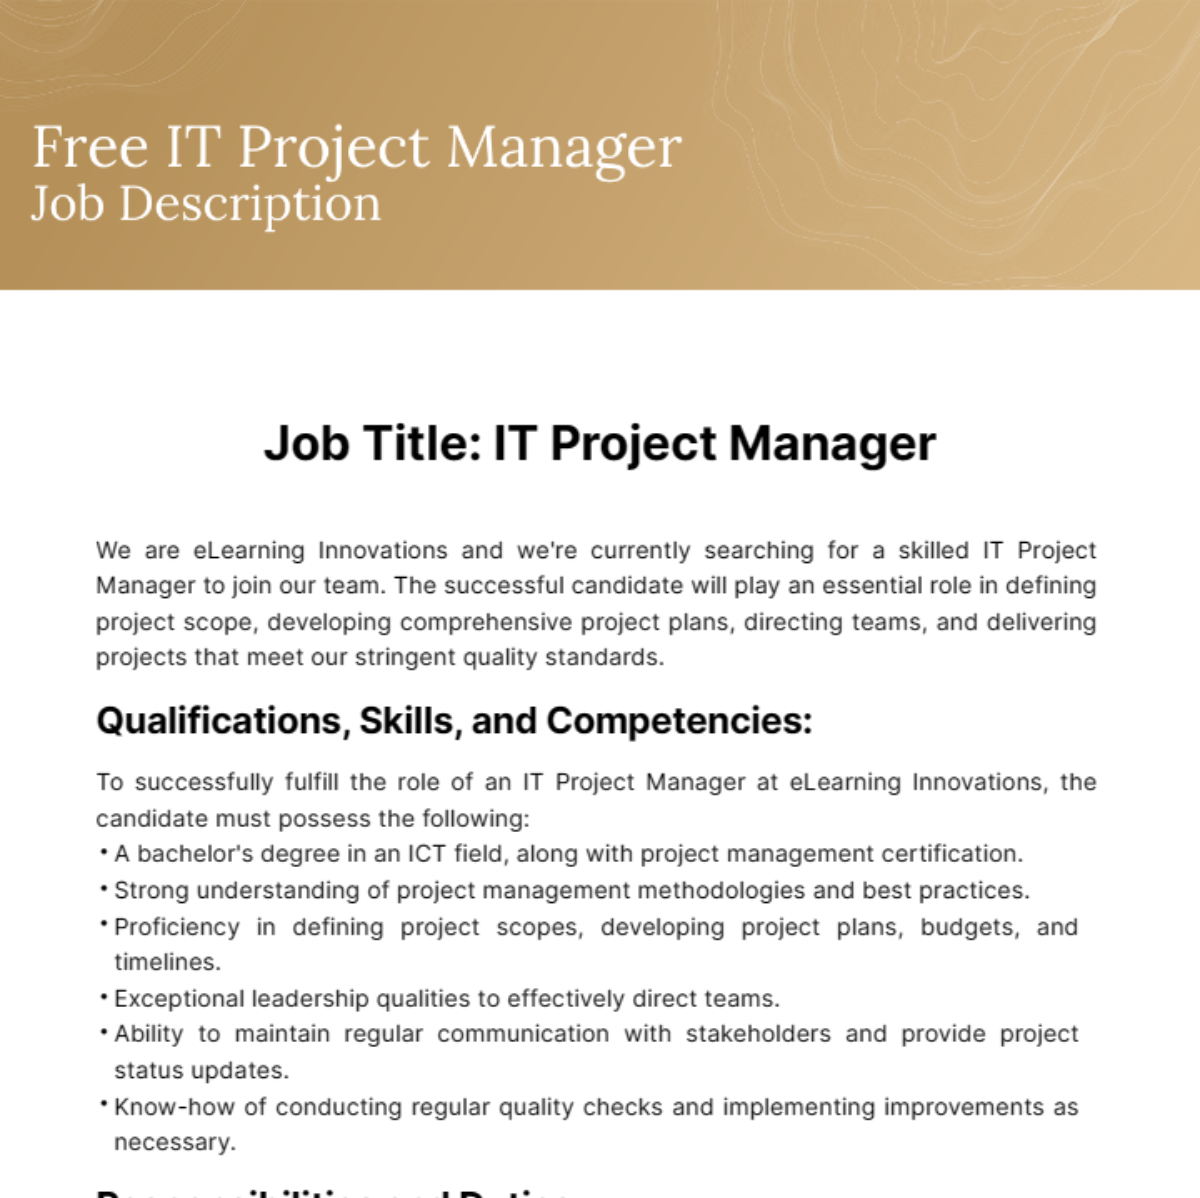 IT Project Manager Job Description Template